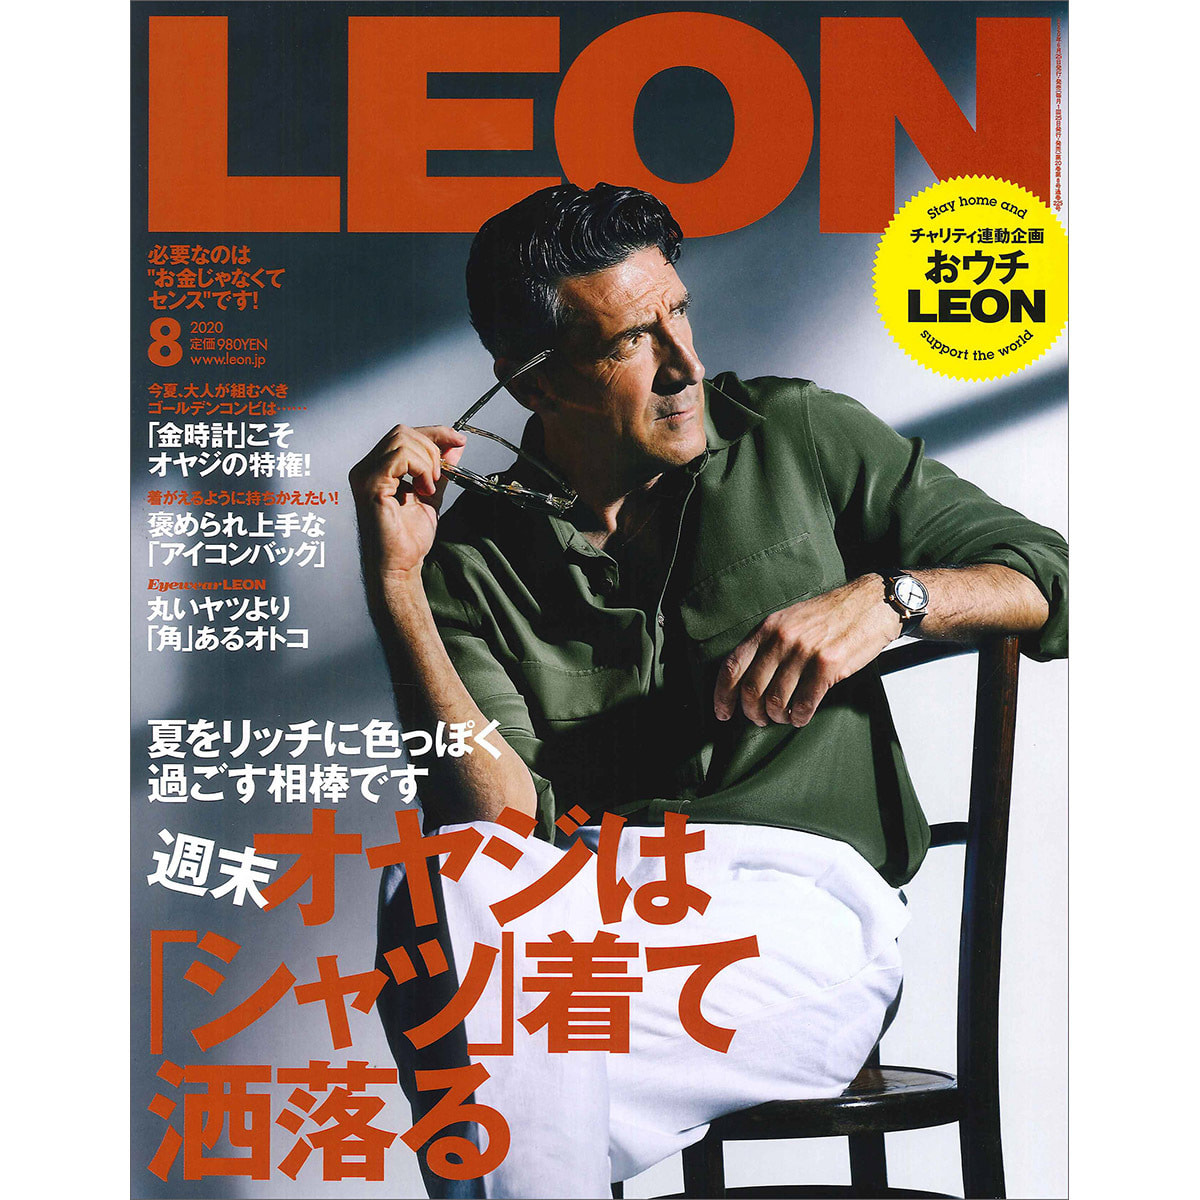 定期購読 Leon レオン 毎月24日 年間12冊分 の卸 通販 ビューティガレージ